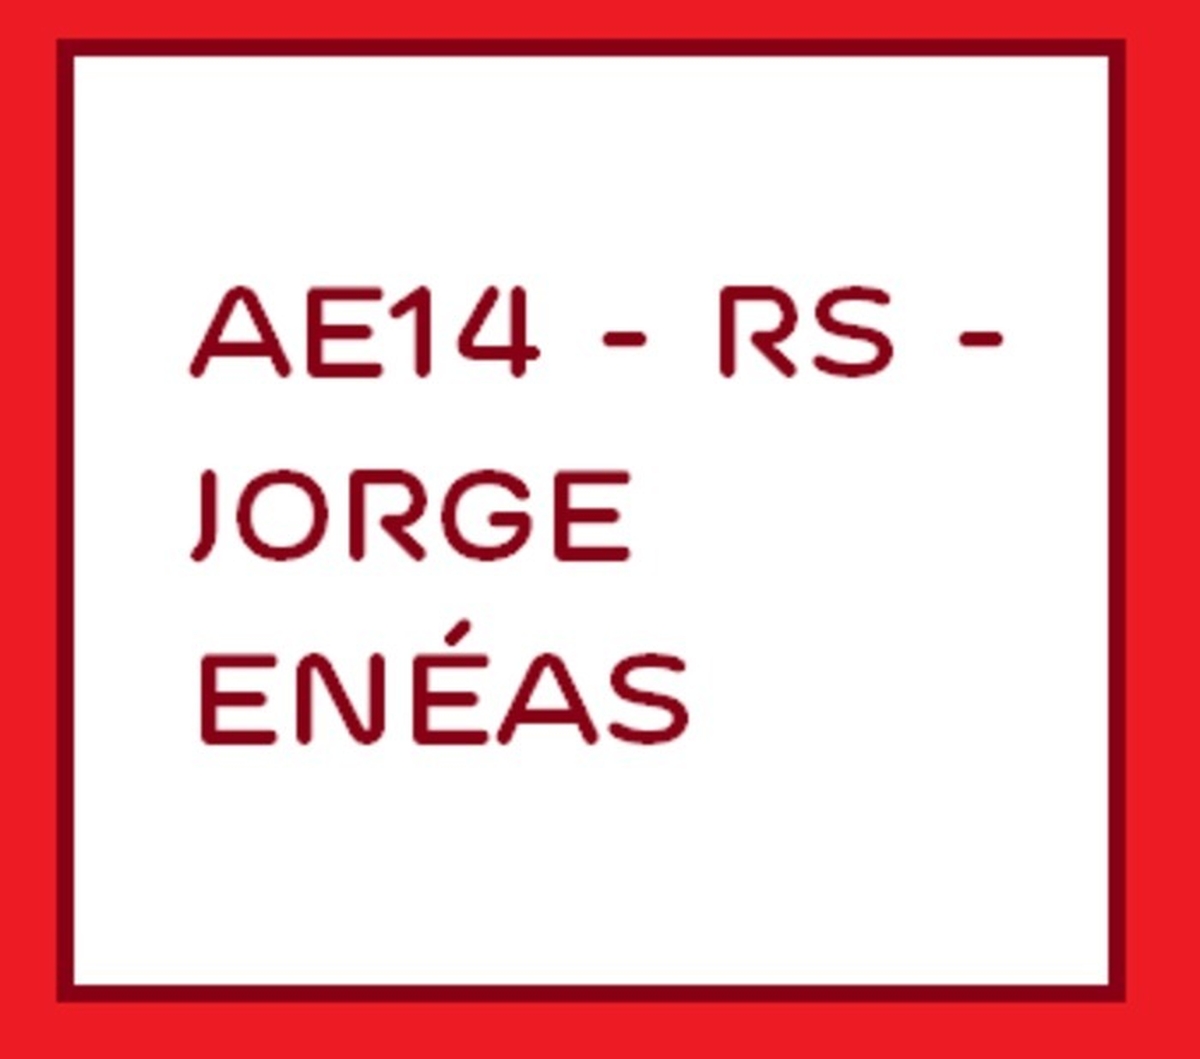 AE14 - RS - Jorge Enéas